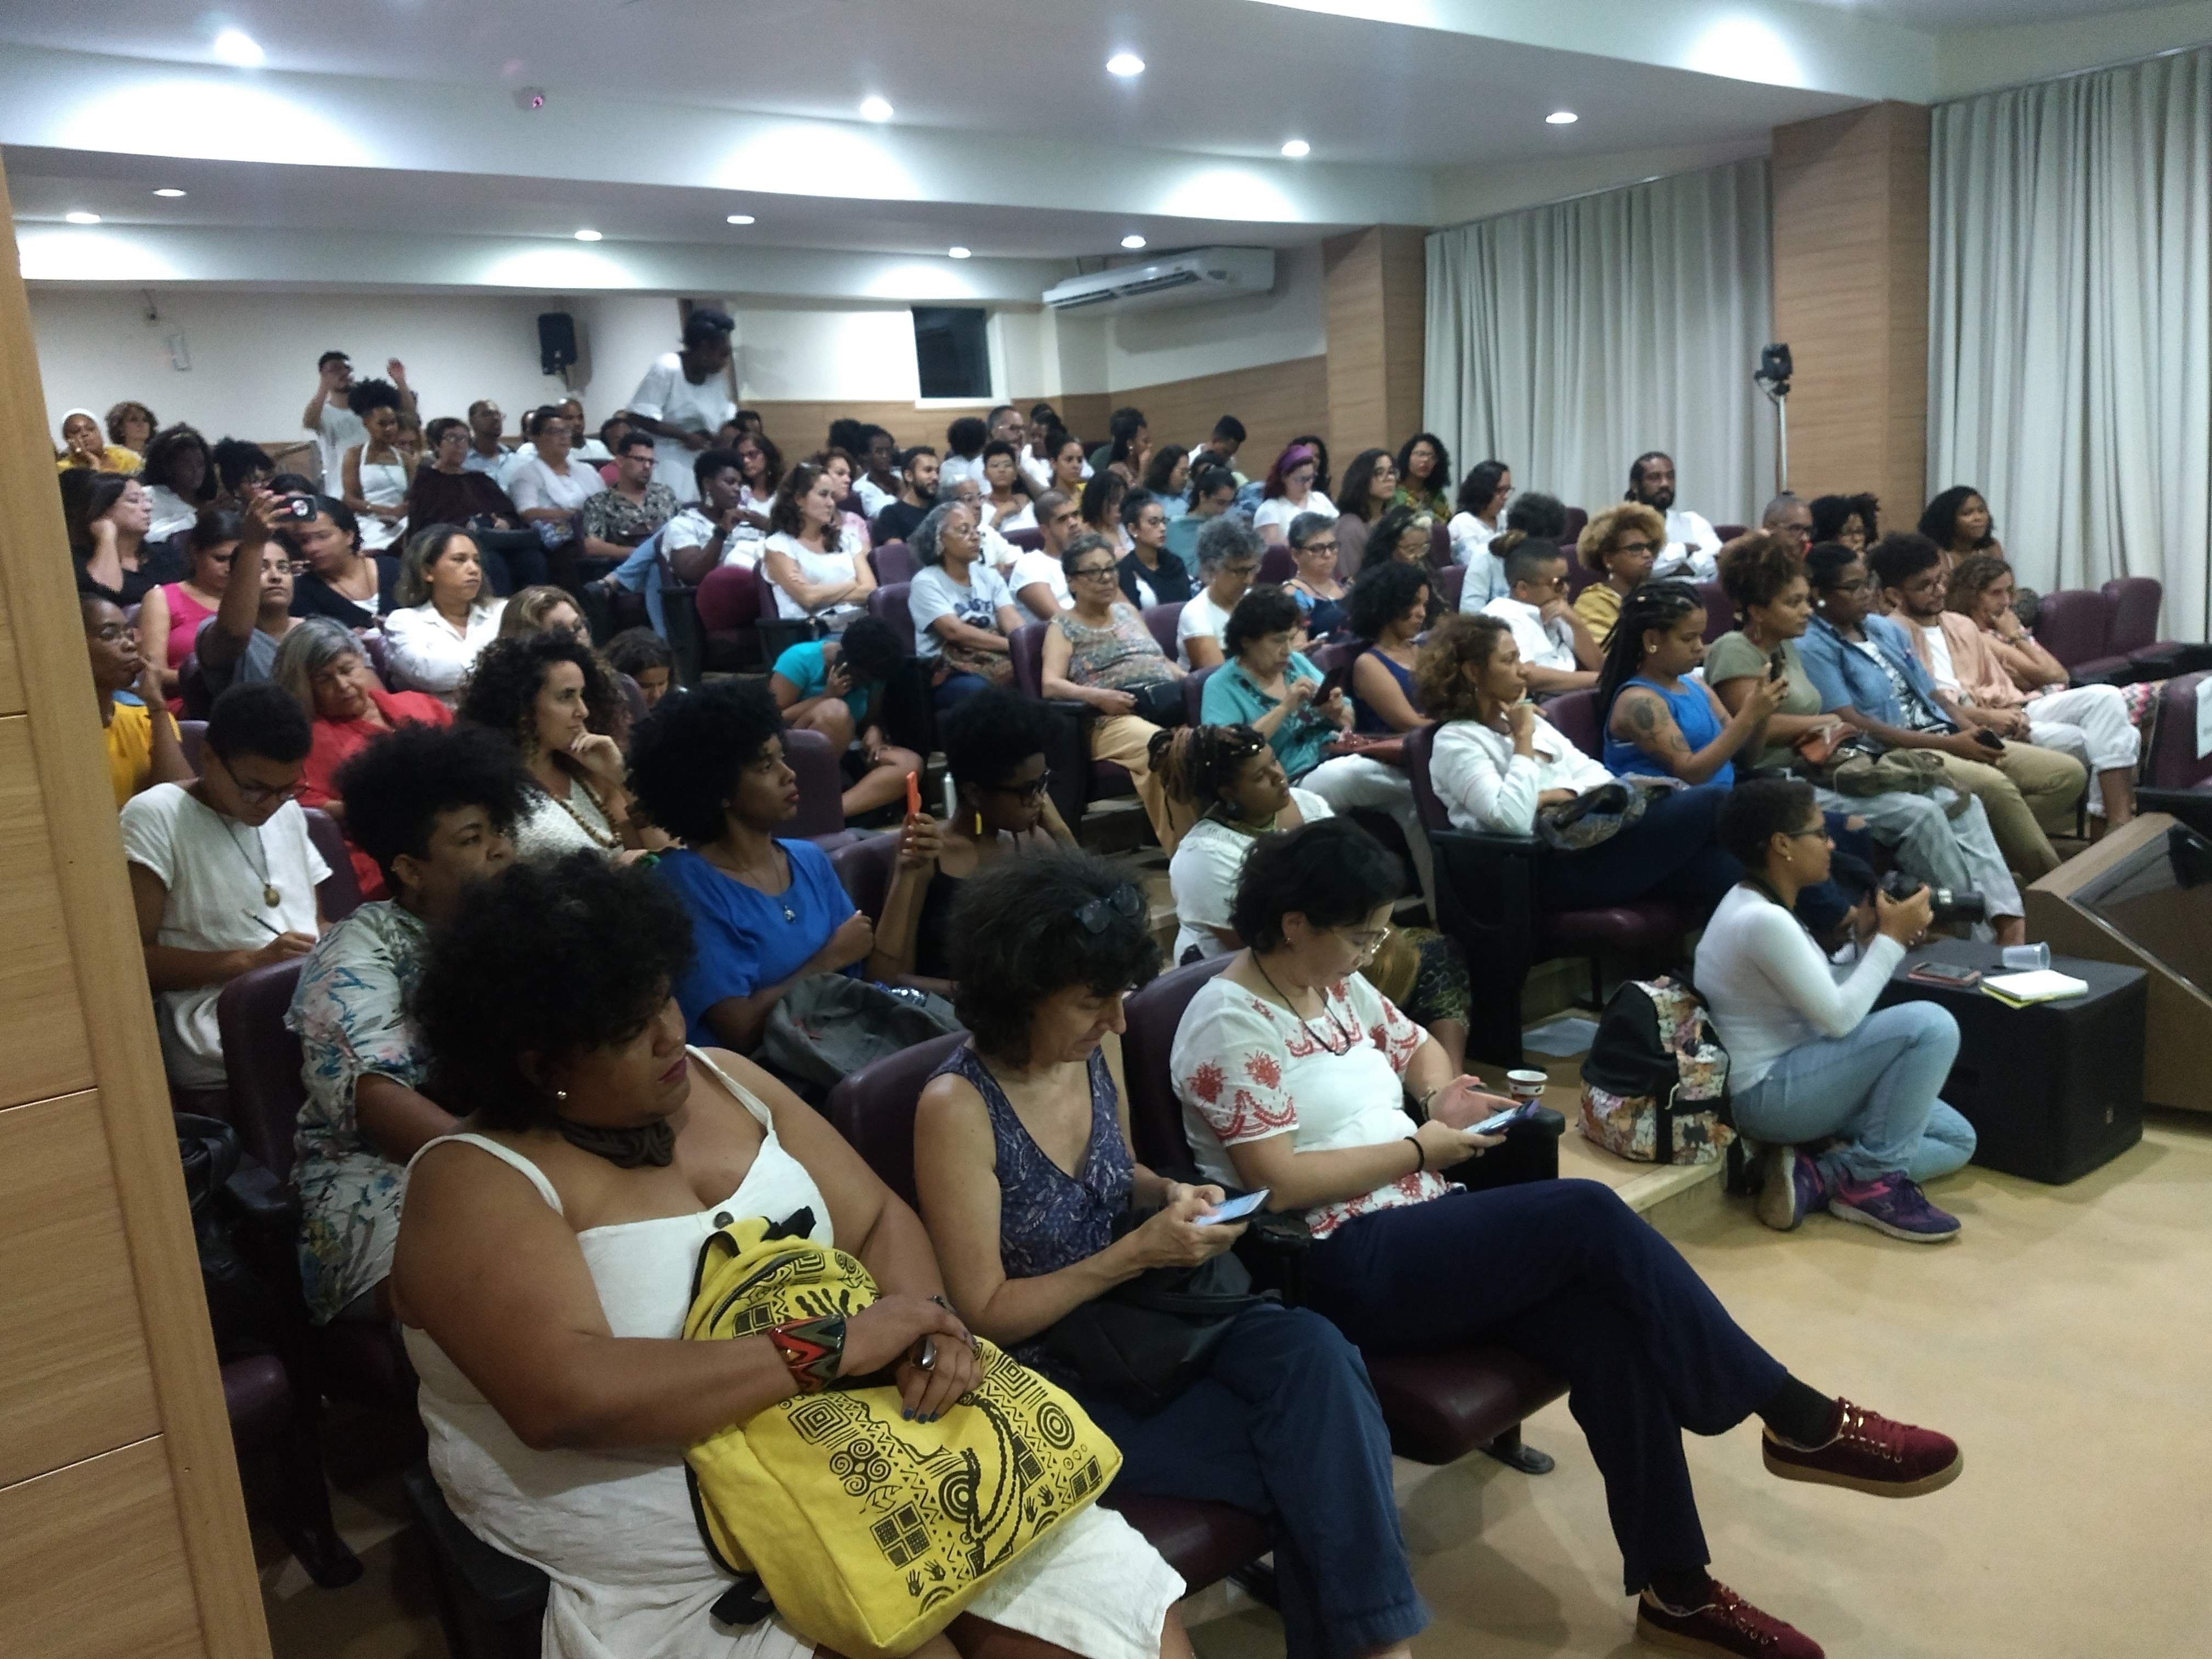 Salvador Bahia audience